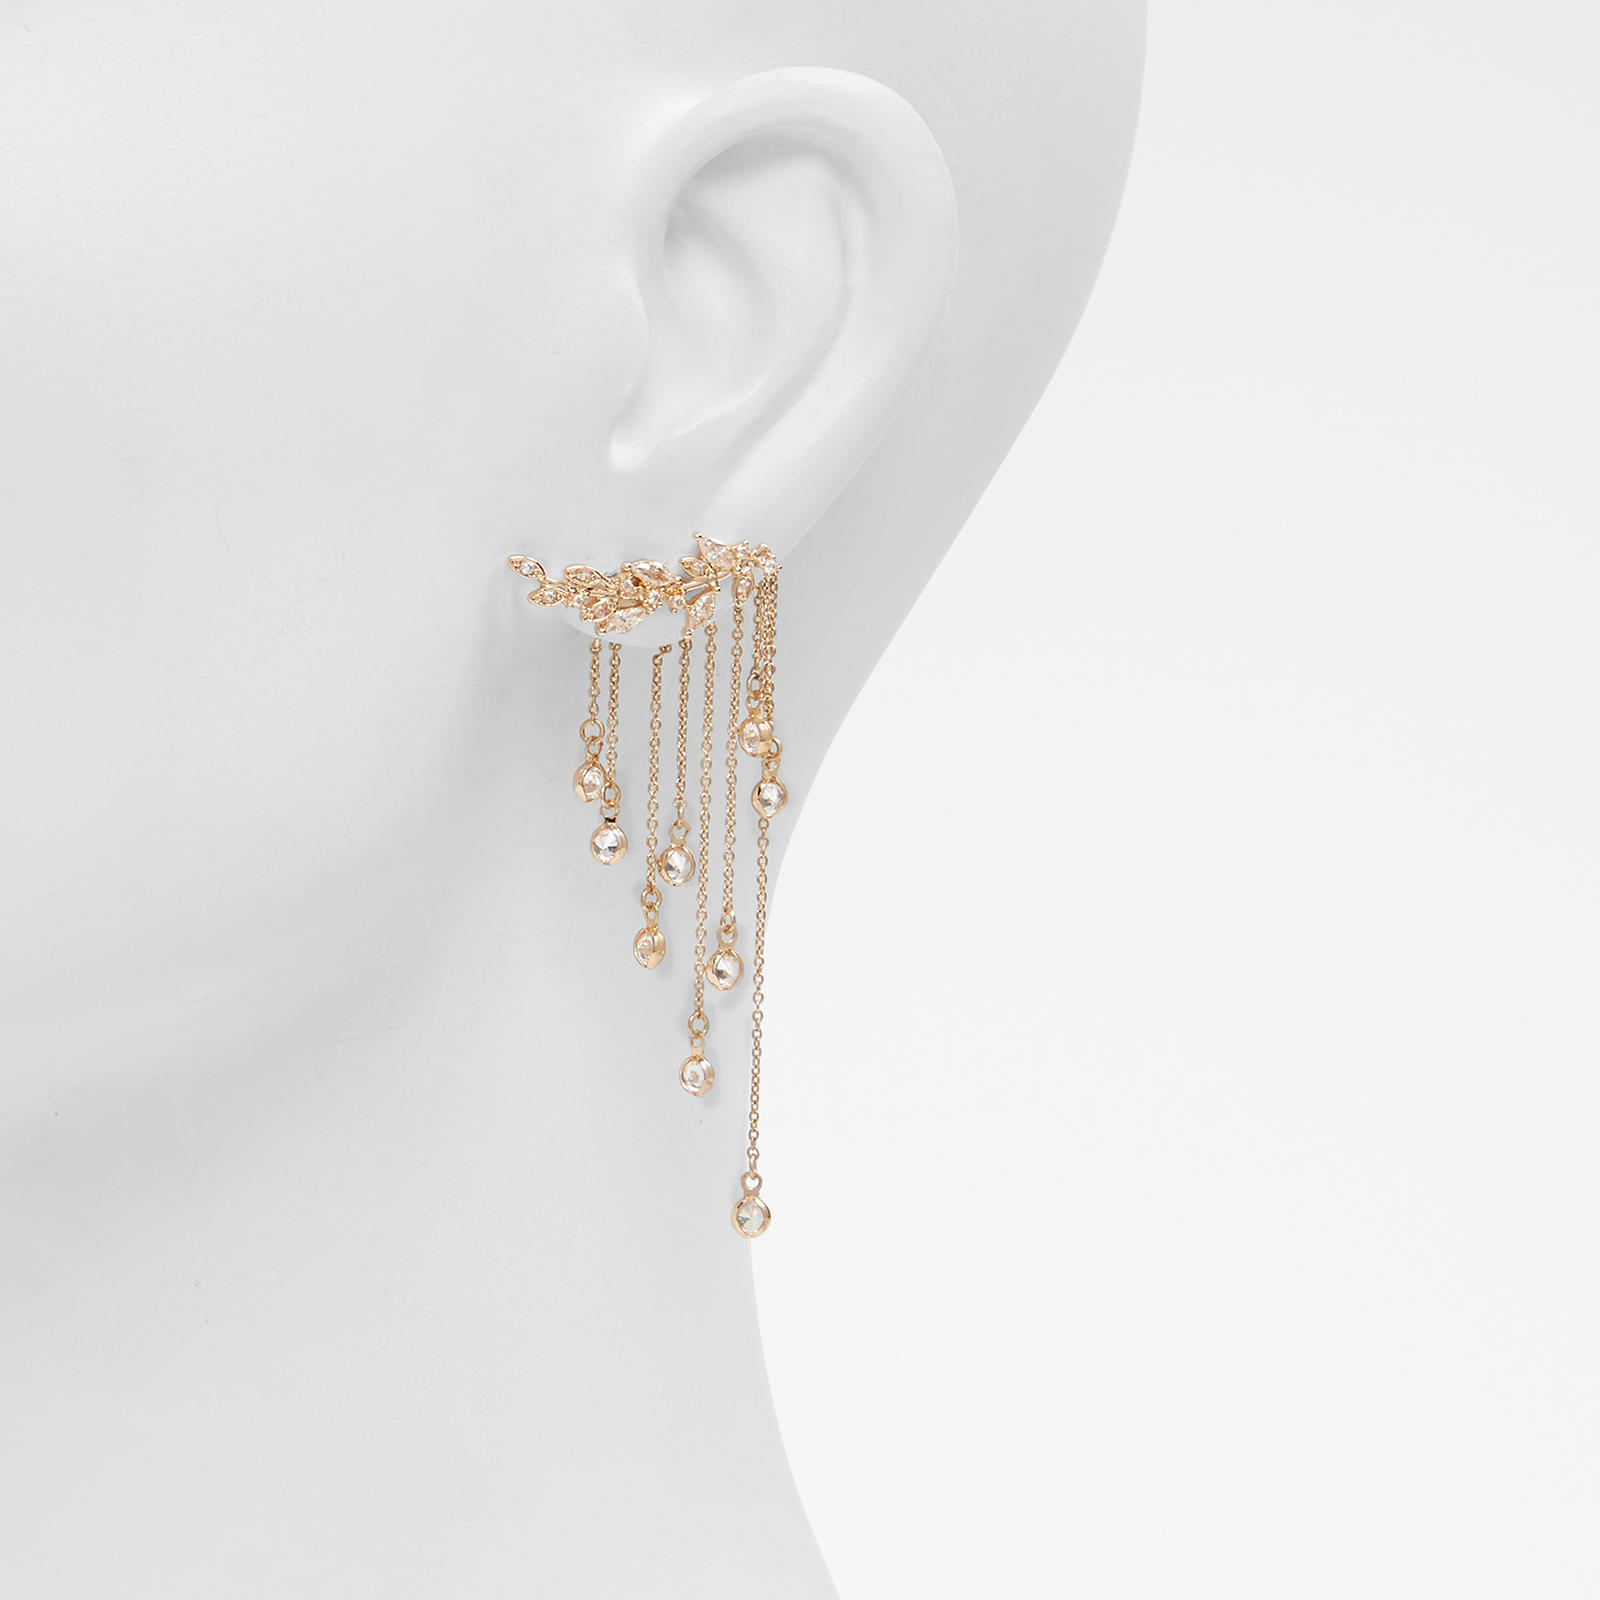 Image of ALDO Aalirwen - Women's Earring Jewelry - Gold-Clear